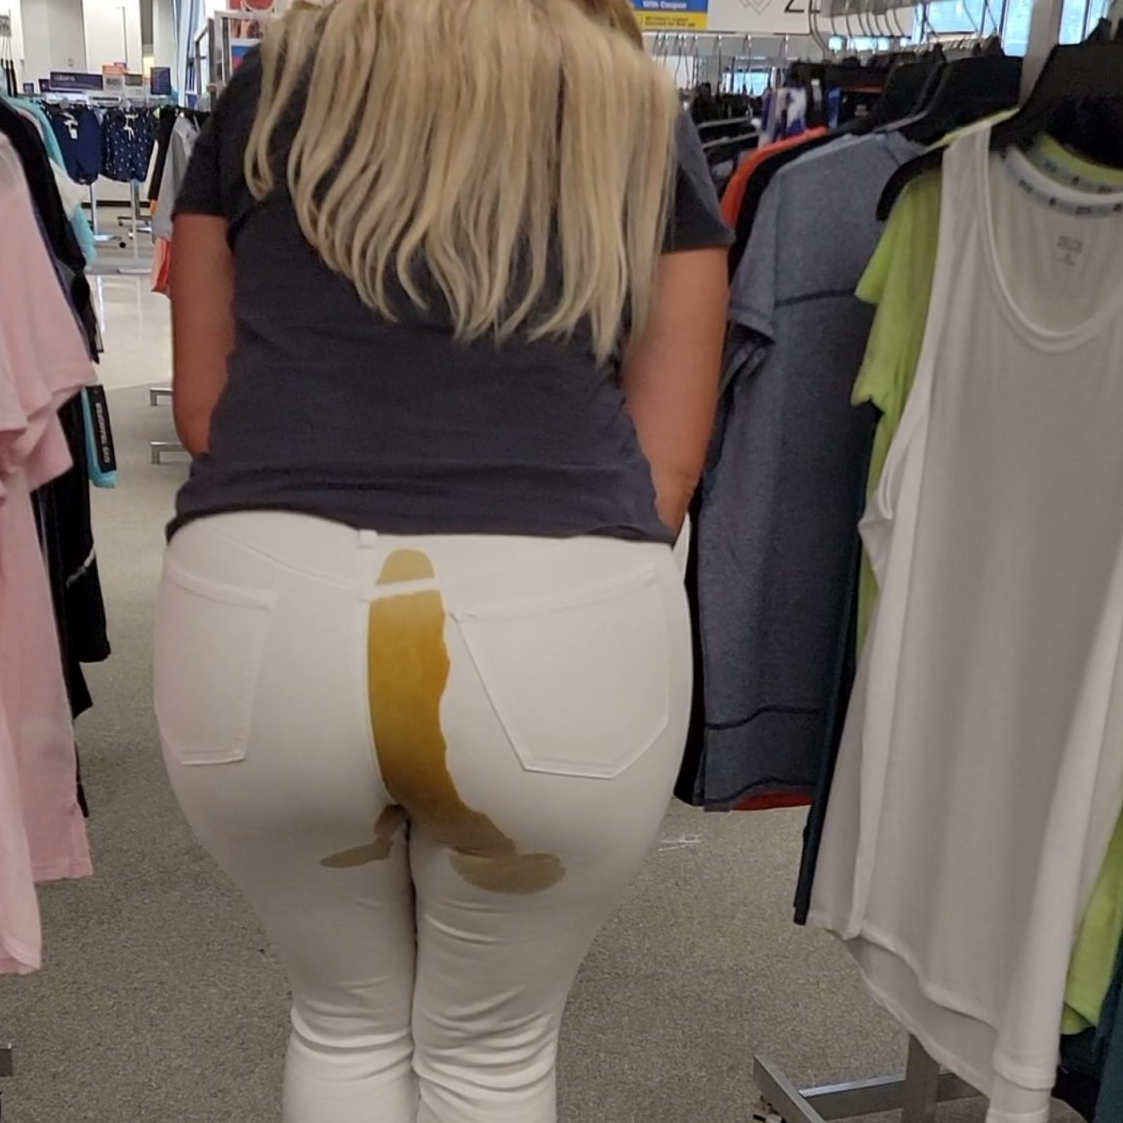 Pooping pants in public